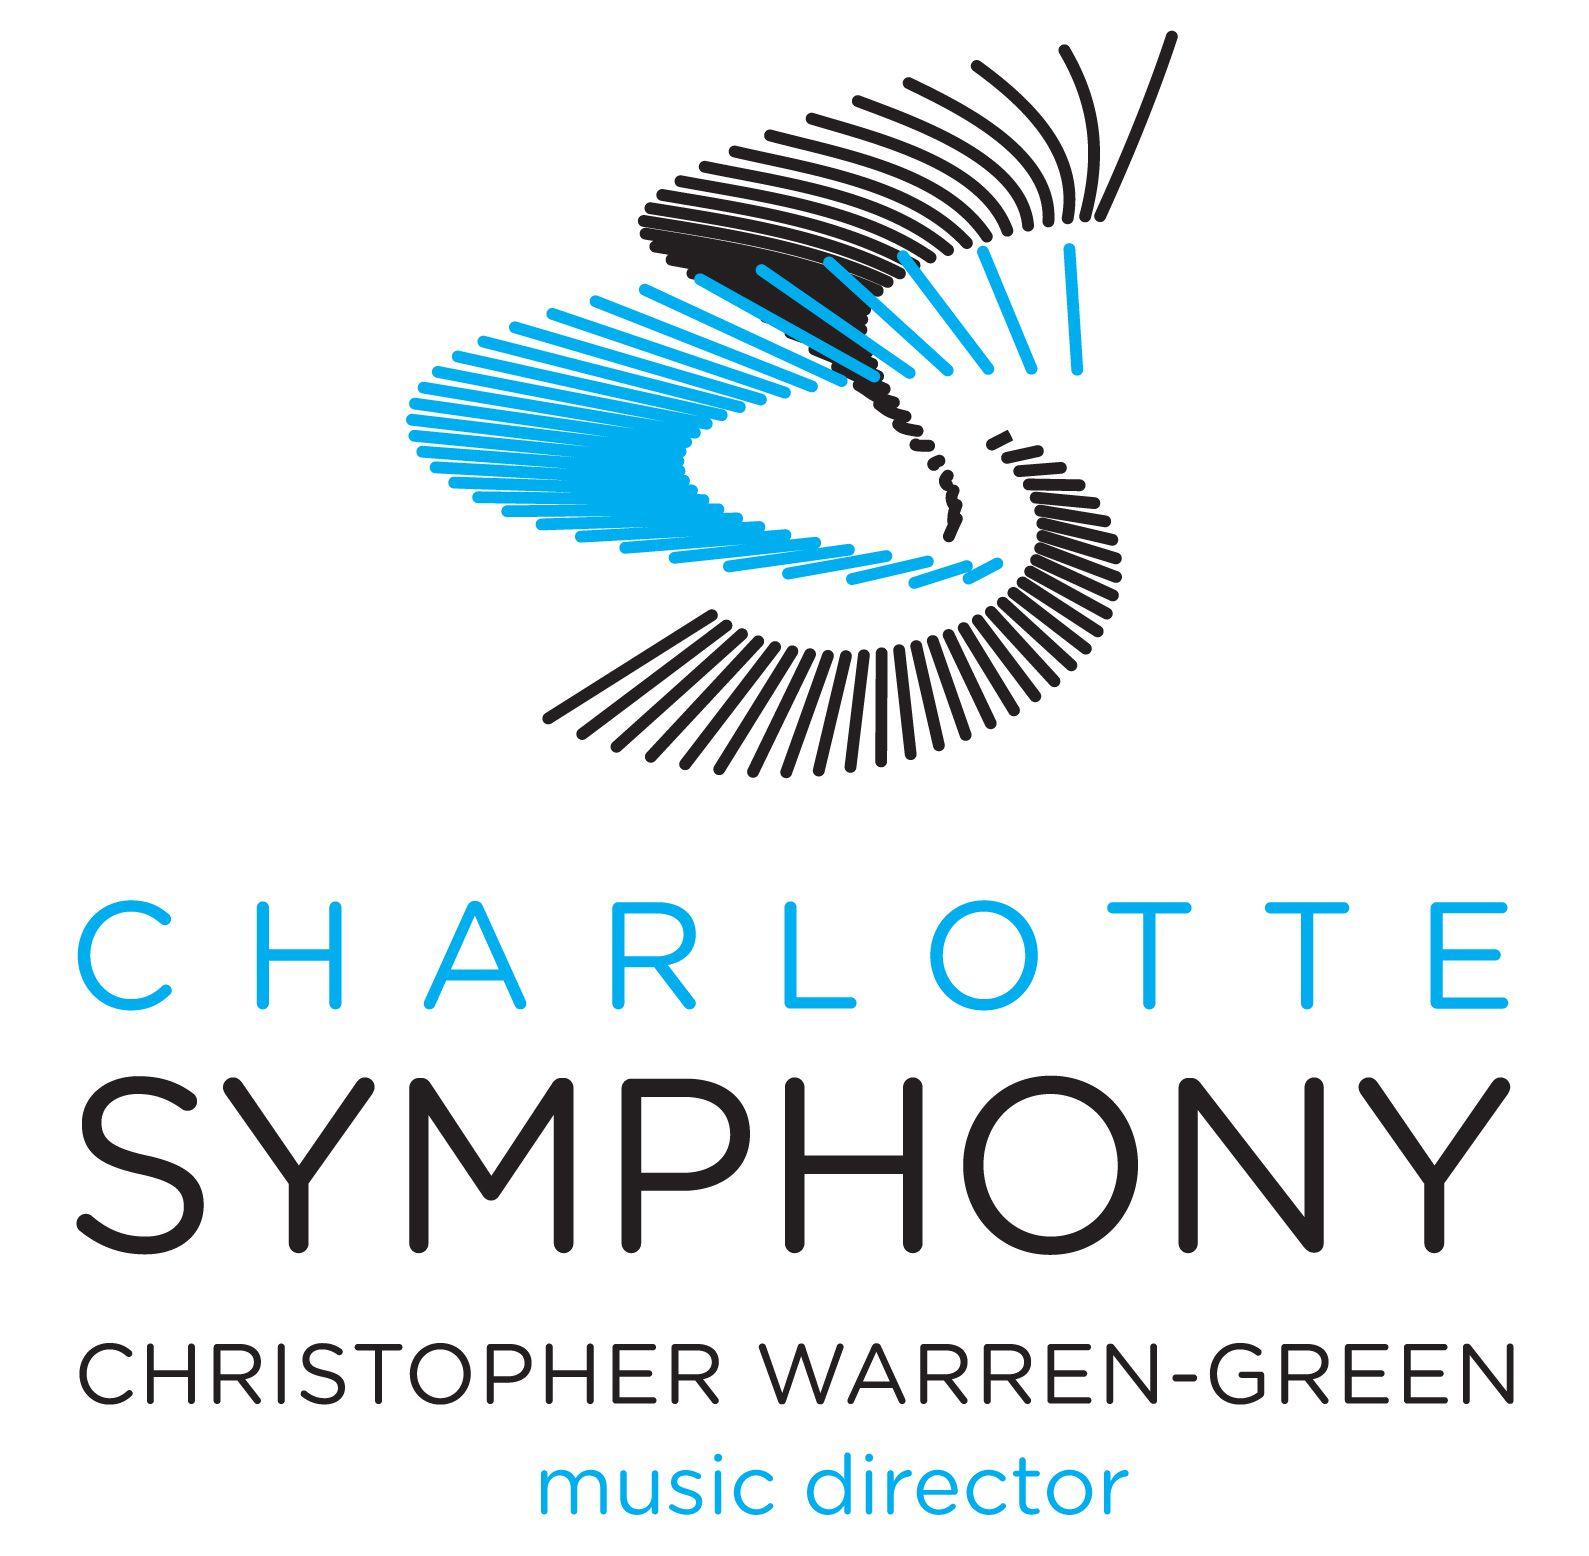 Symphony Logo - High Quality Image Archive. Charlotte Symphony Orchestra